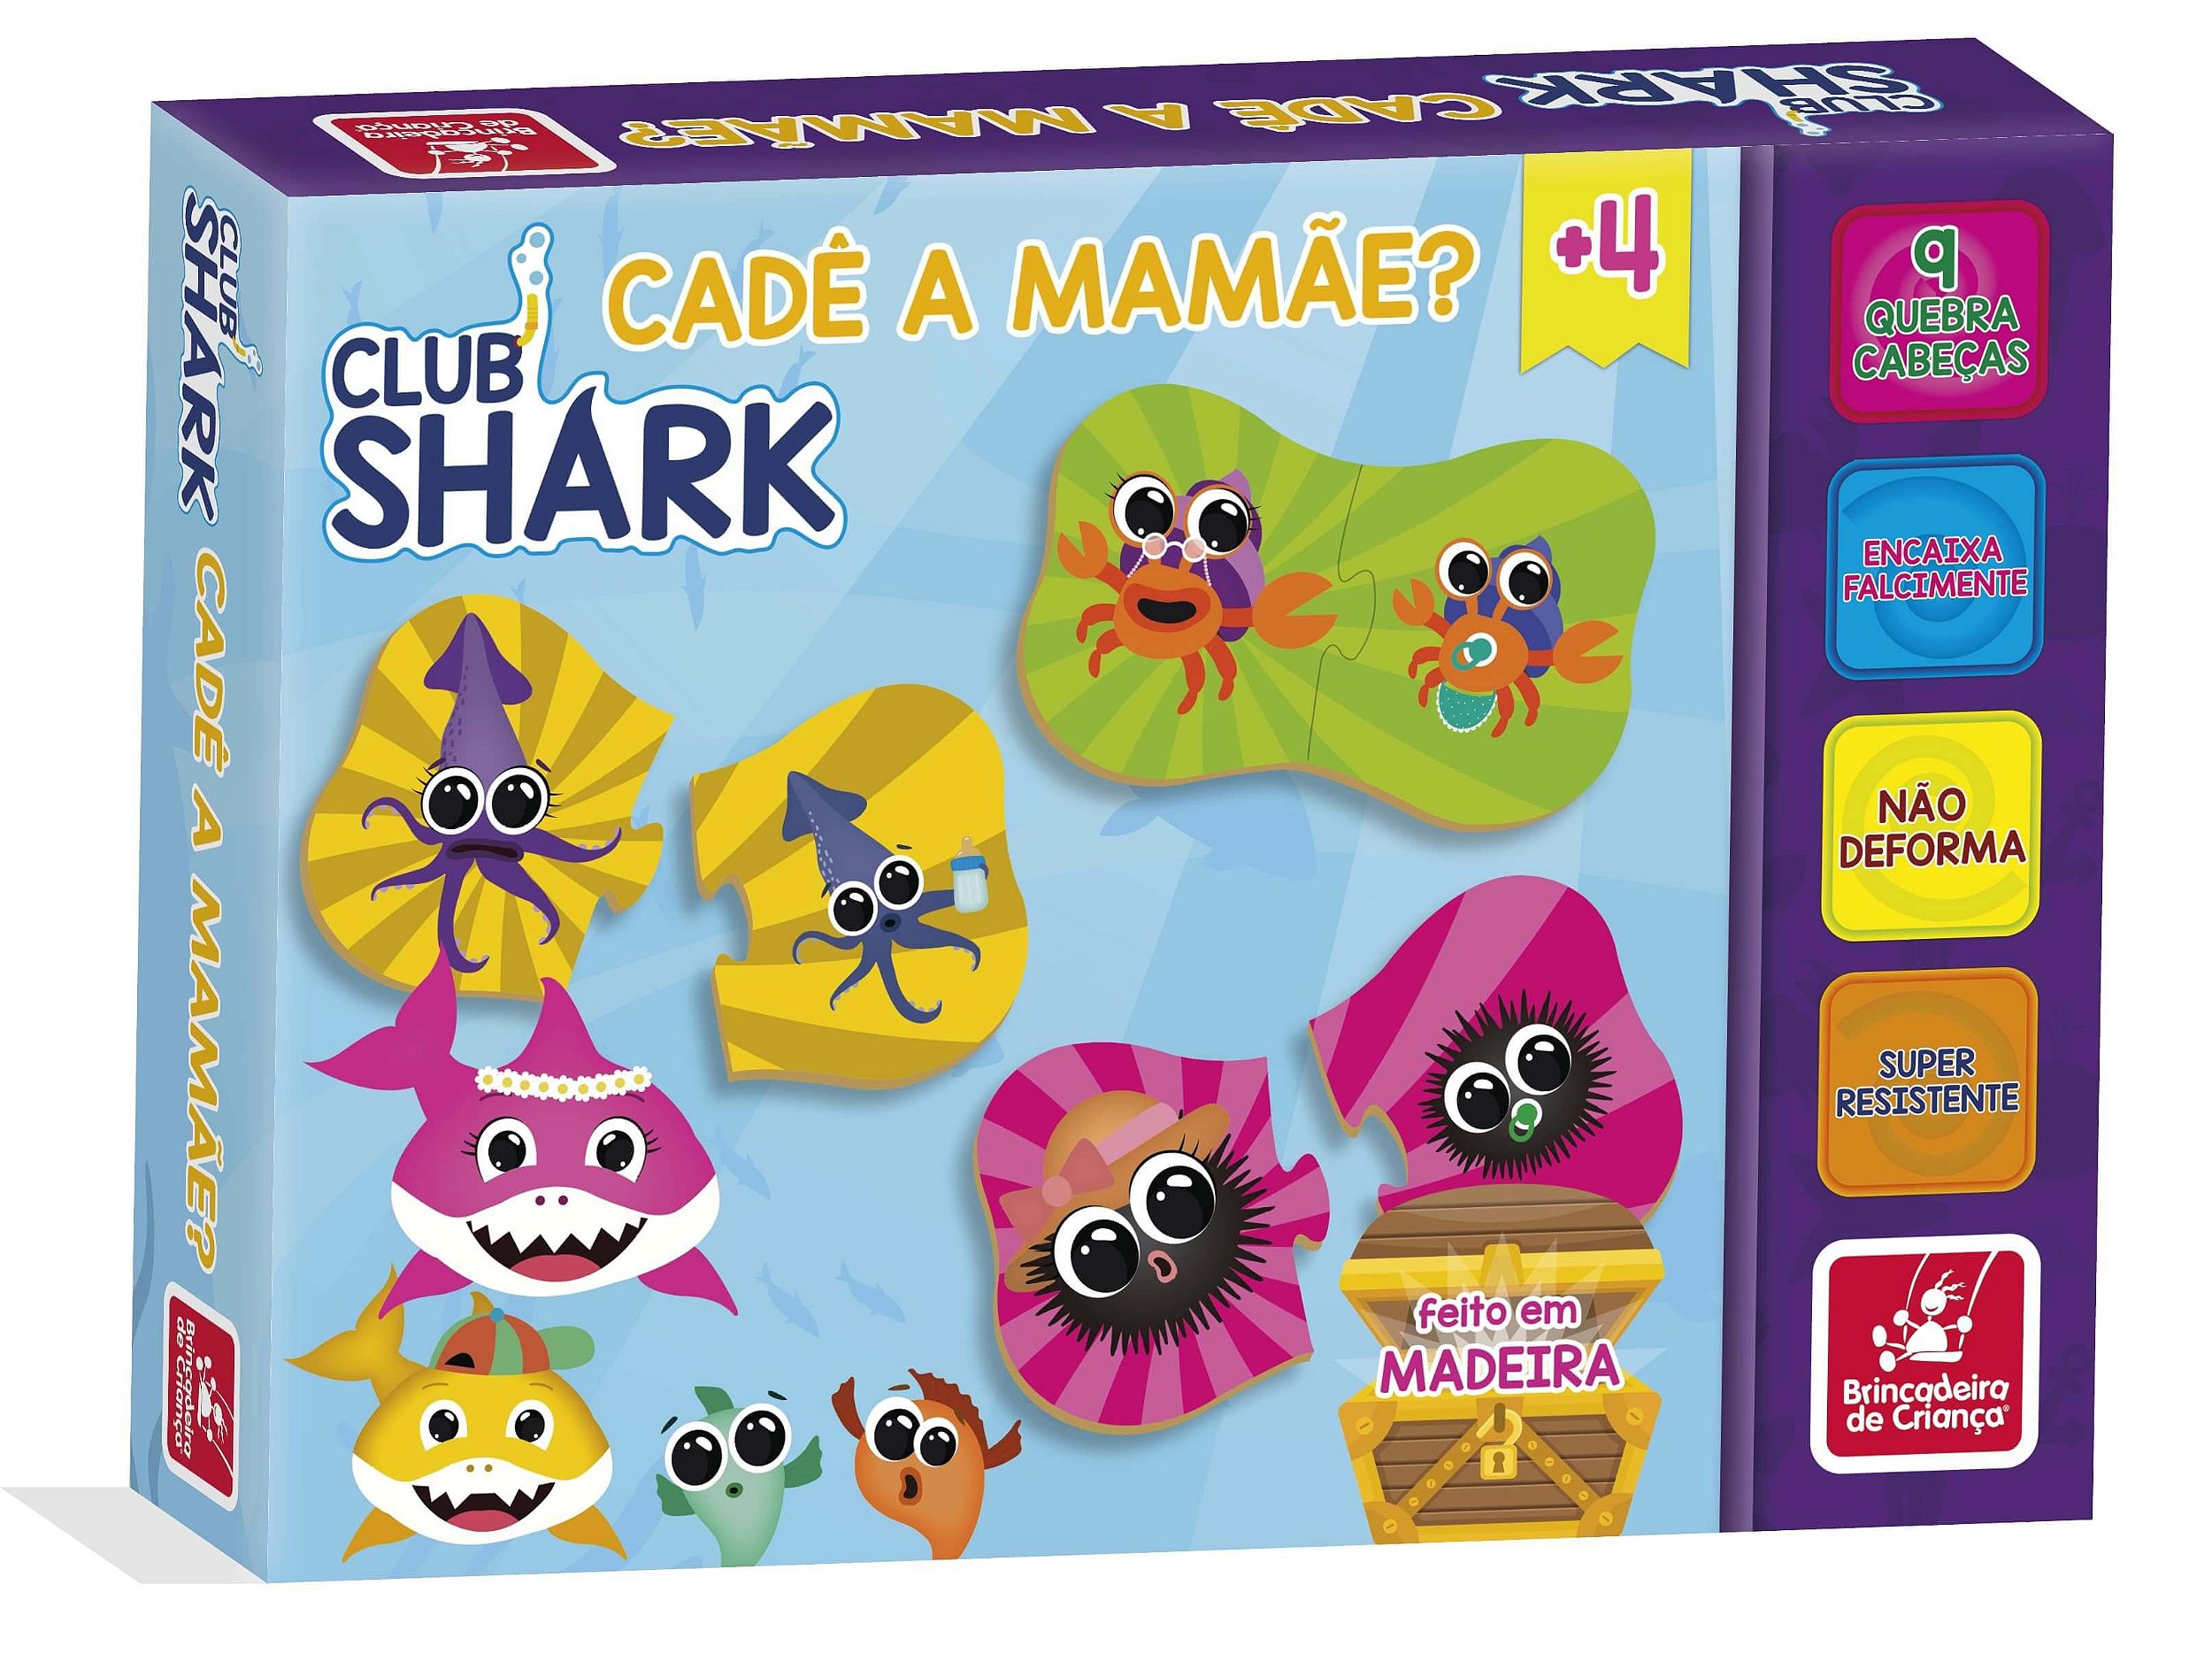 Jogo da Memória Club Shark (24 peças) - Educativos Brinquedos